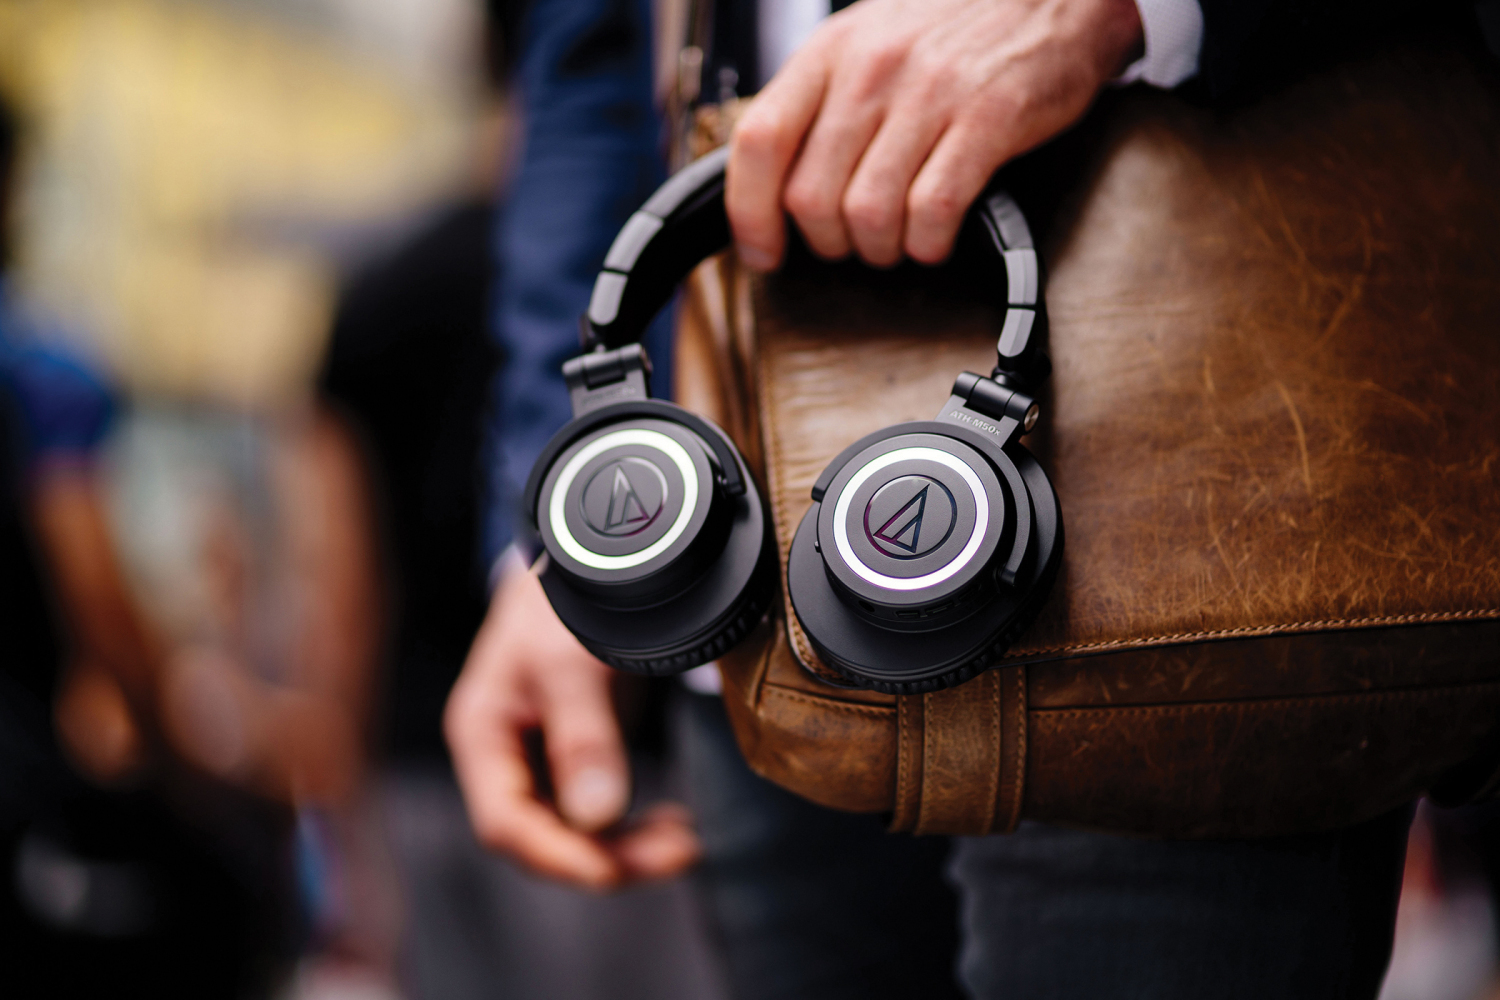 音频technica ath-m50xbt的生活方式图像是男人的手握在皮革允许袋上的耳机。